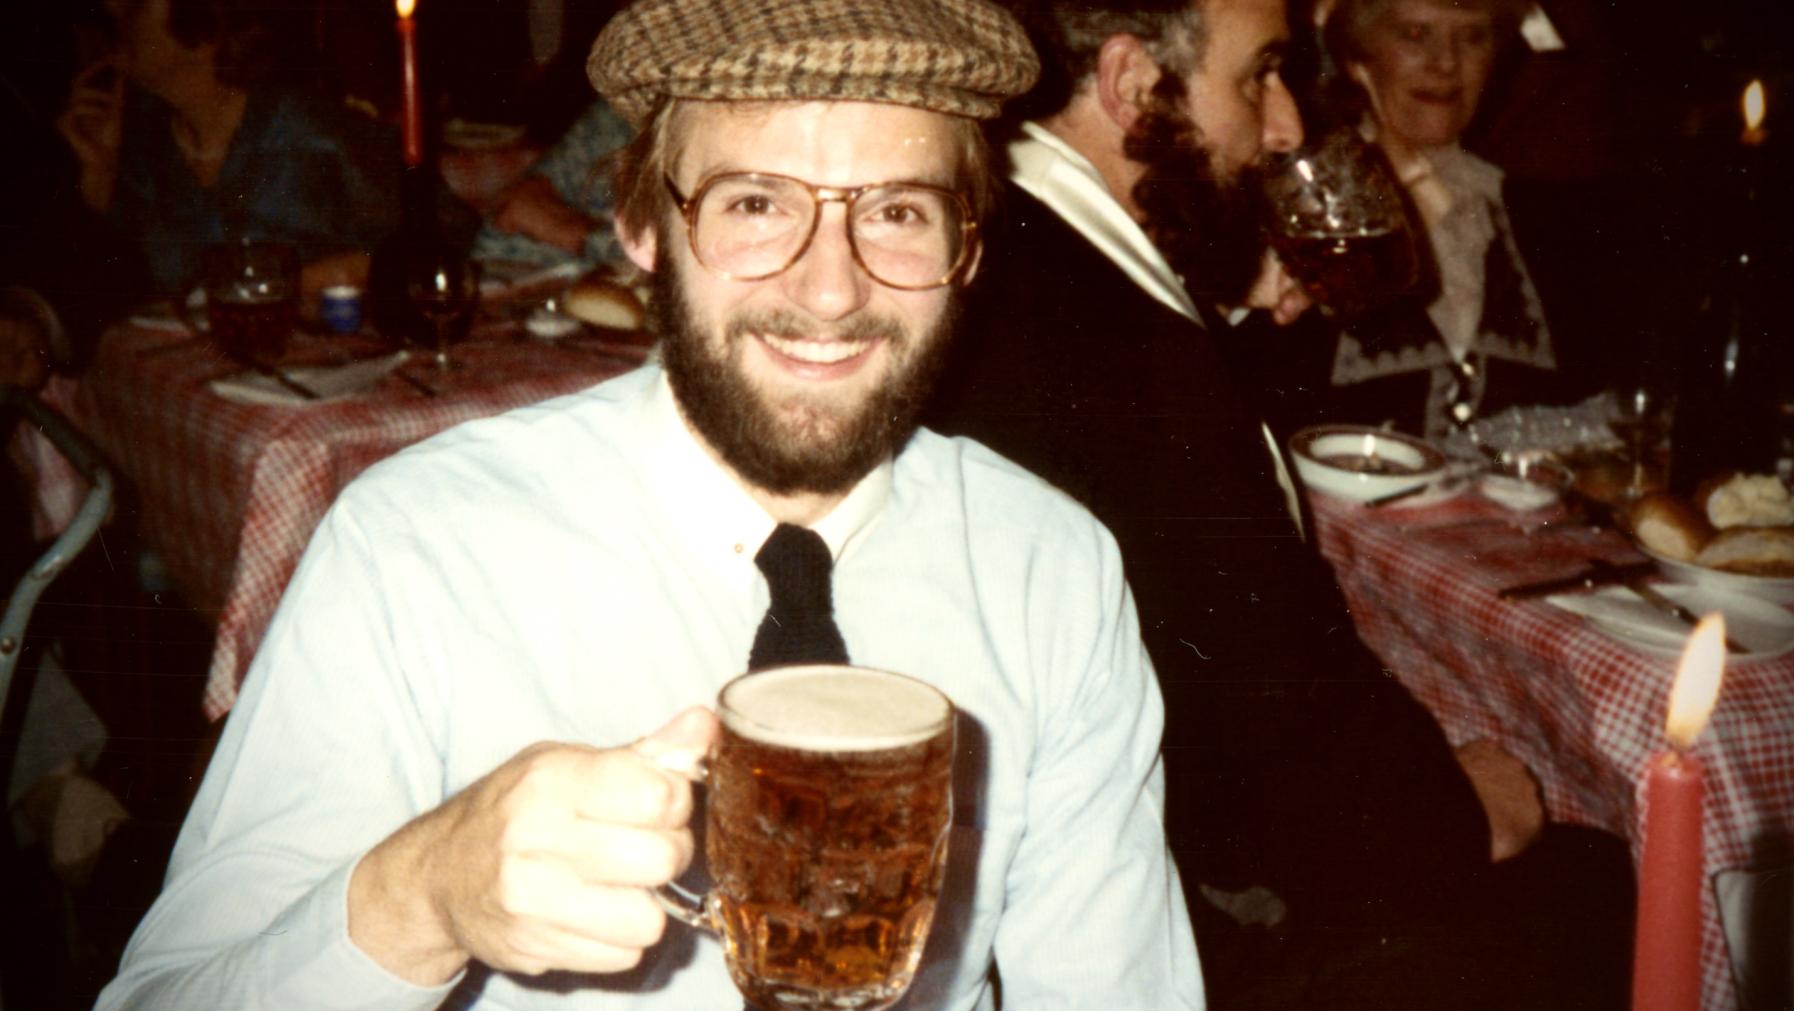 James Robert Hanssen smiles, holding a beer.